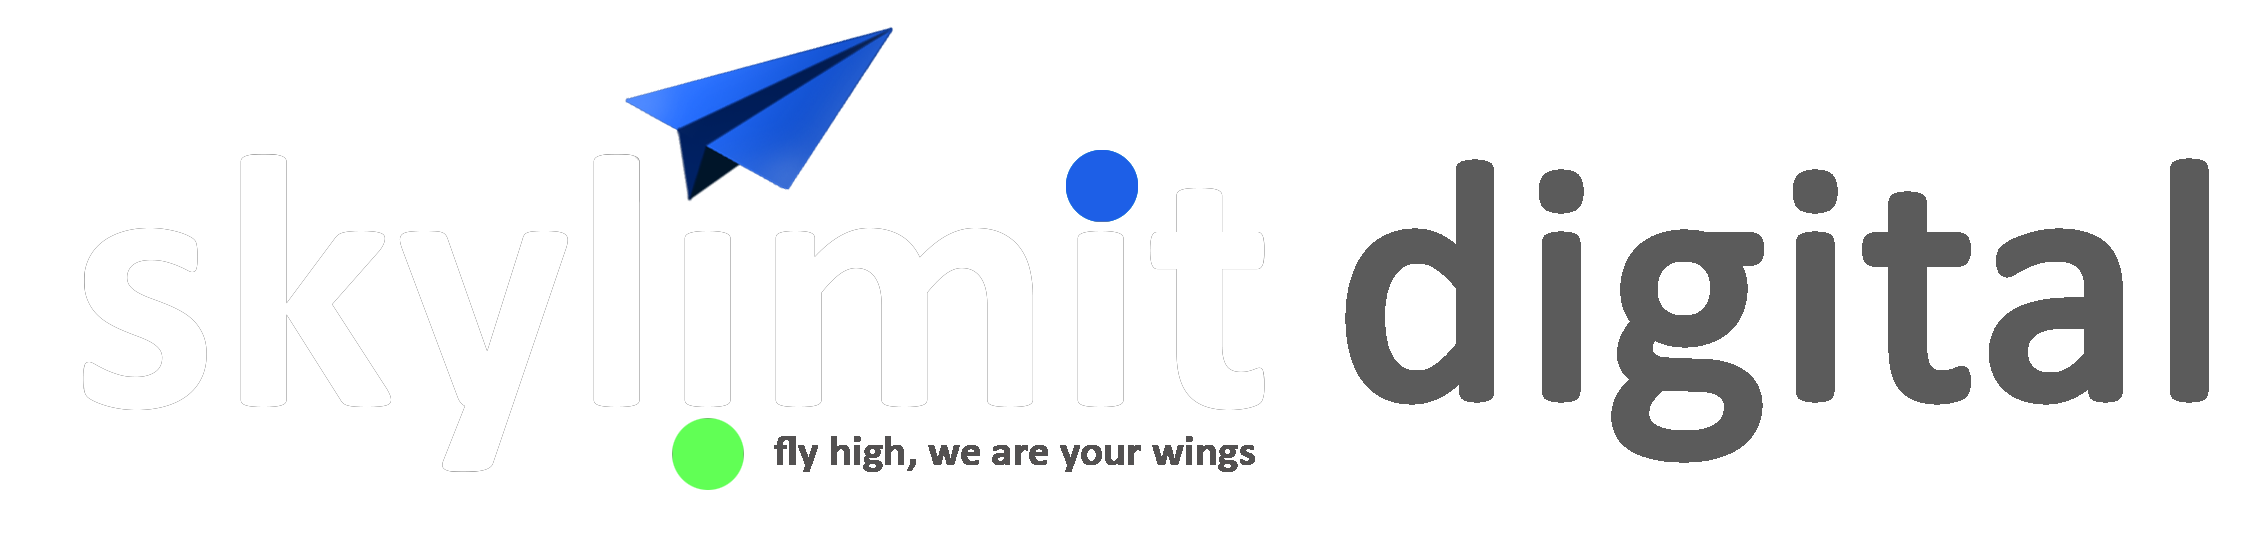 Skylimit Digital Brand Logo